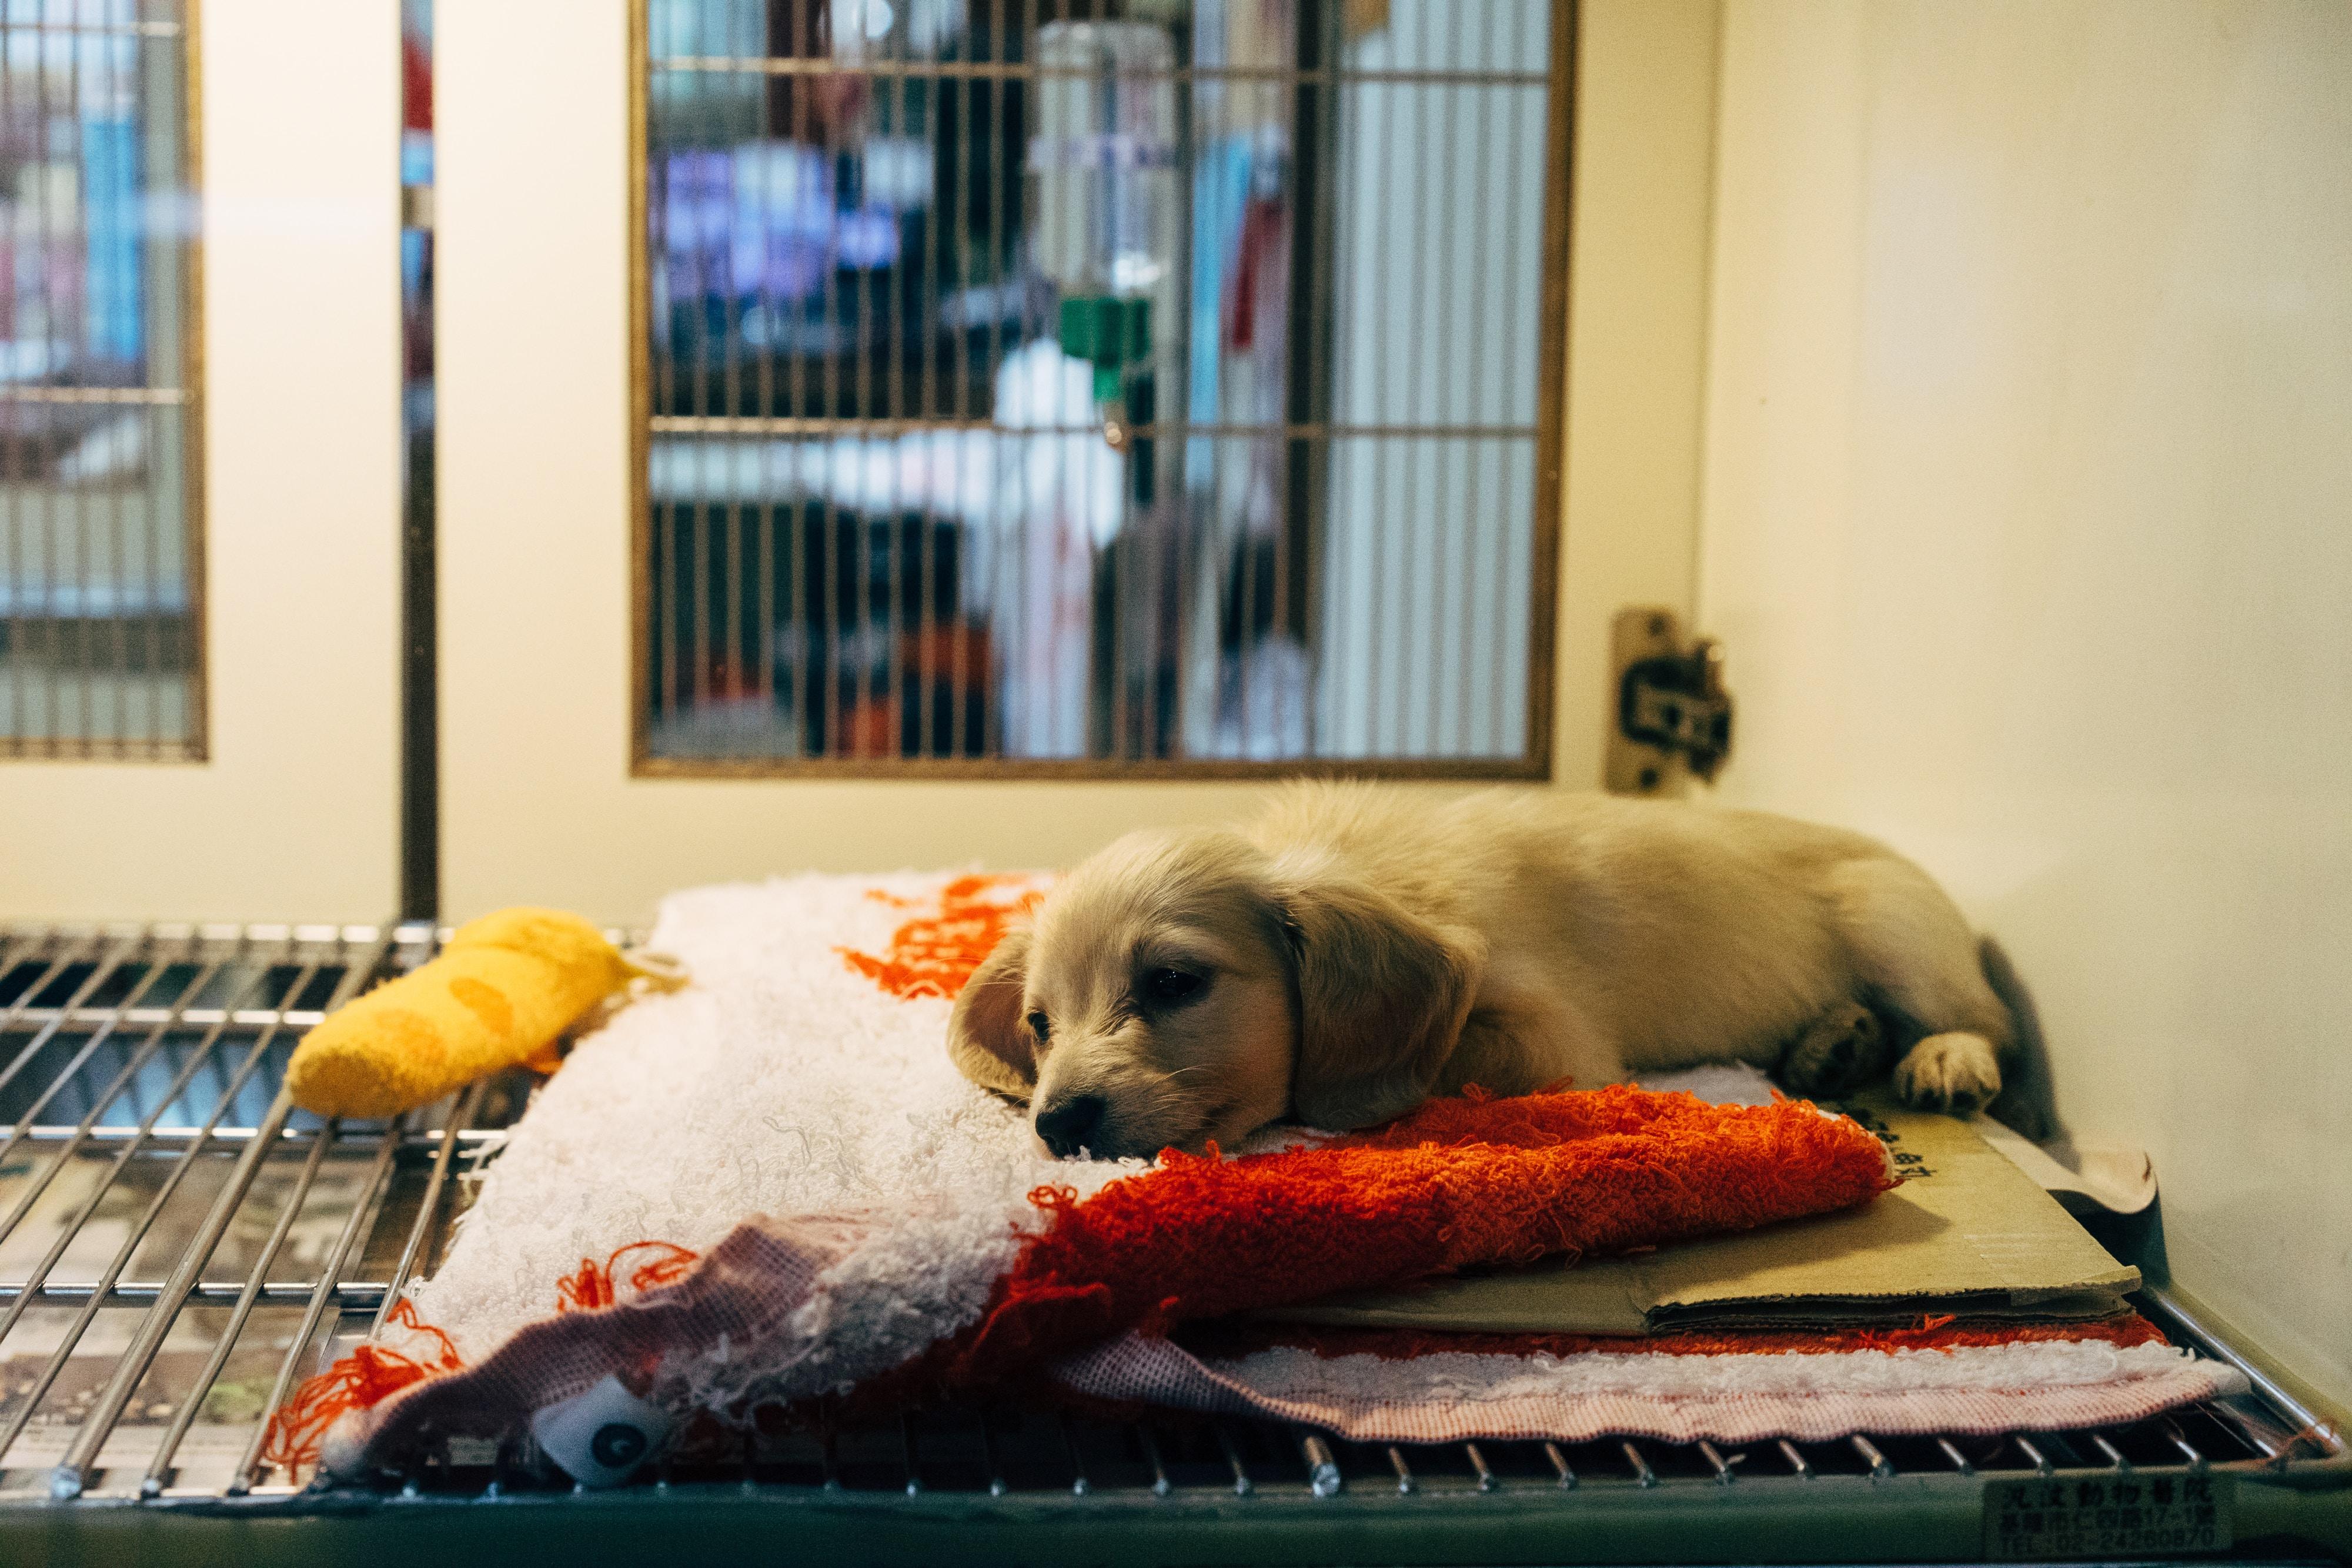 Un perro en una tienda de mascotas como la condenada en Barcelona. Unsplash